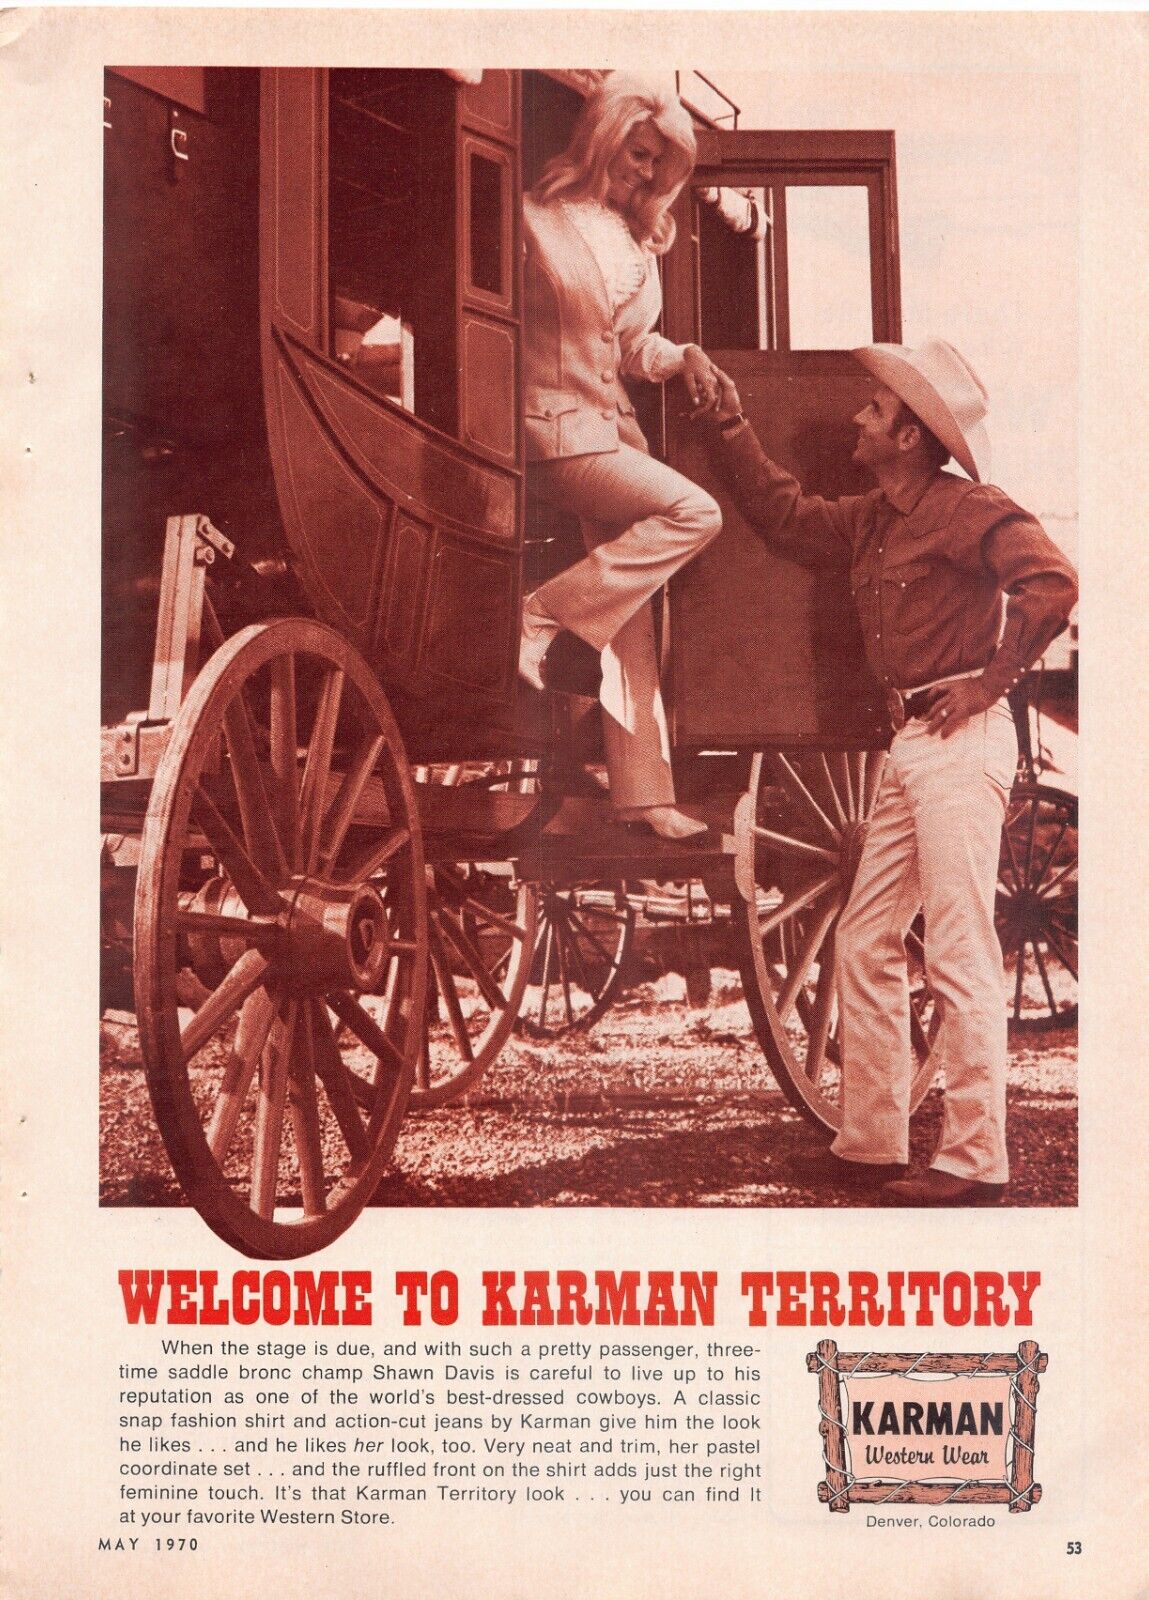 Karman Western Wear Cowboy Horse-Drawn Stagecoach Vintage Magazine Print Ad